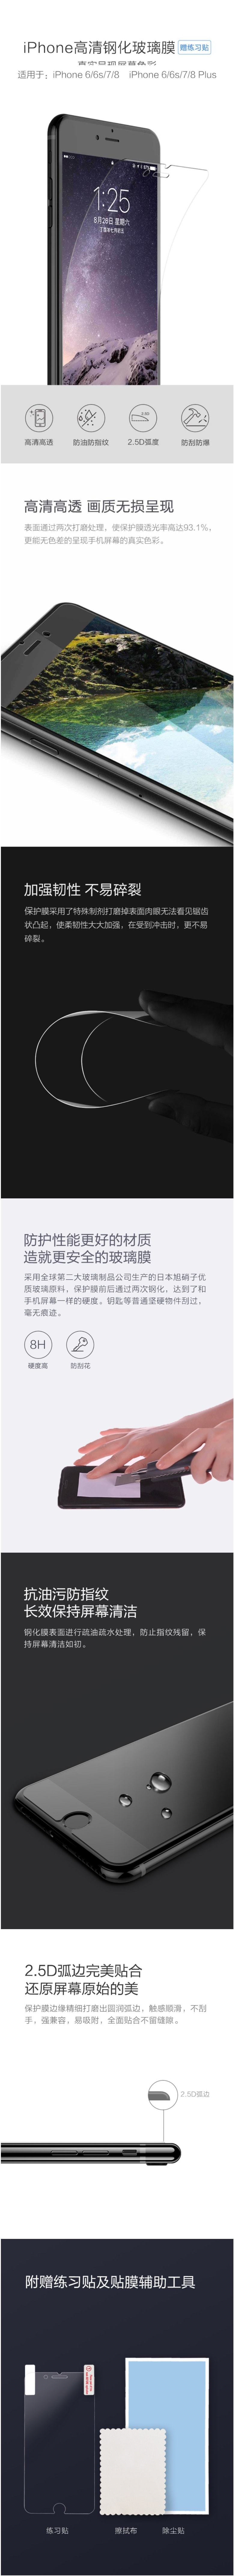 小米有品iPhone 6/6s/7/8手机高清钢化玻璃膜